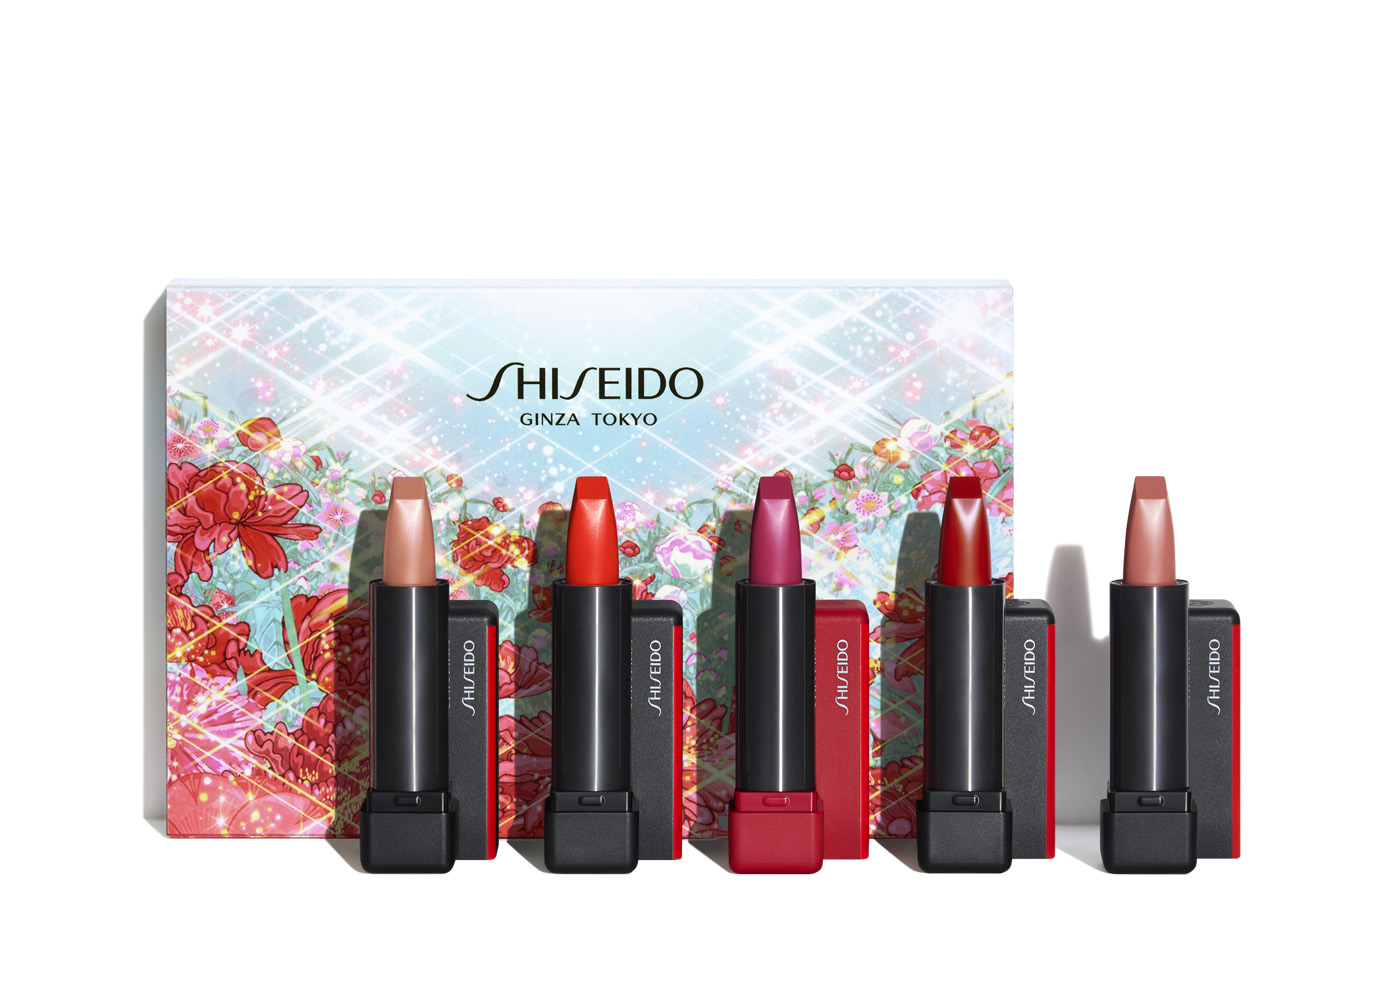 Shiseido tokyo